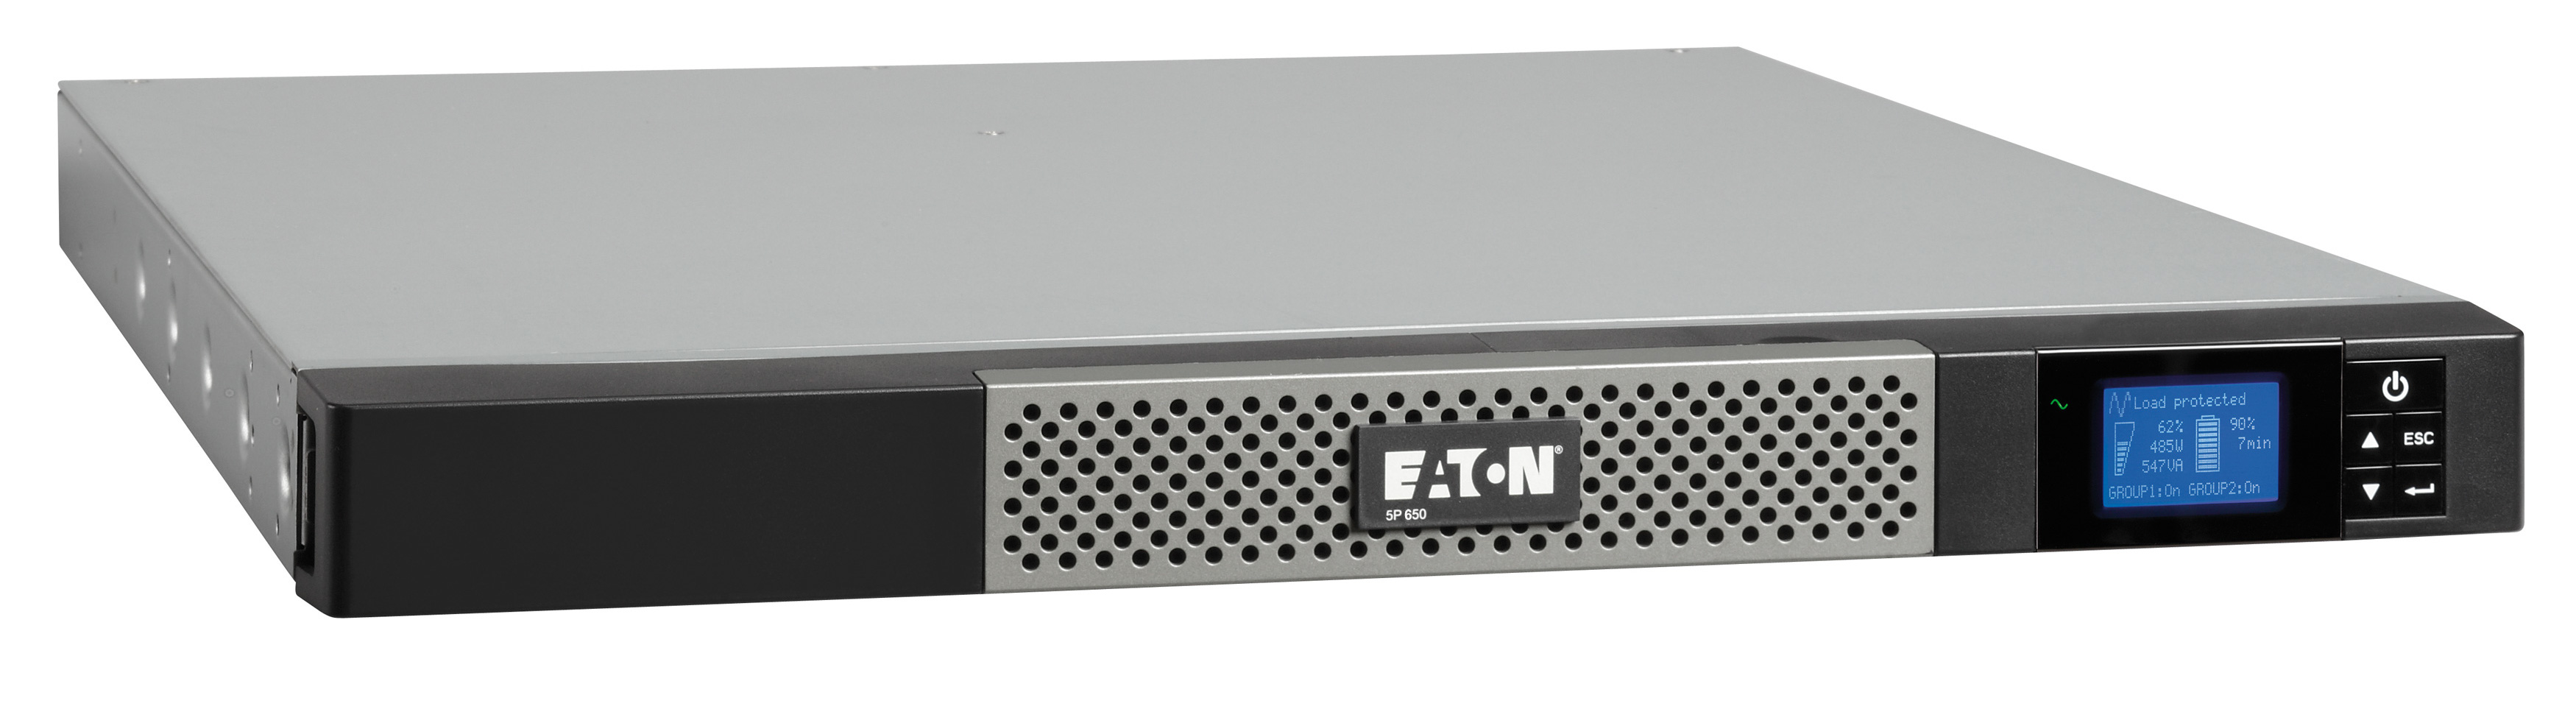 ИБП Eaton 5P 650iR, 650VA, 420W, IEC, розеток - 4, USB, черный (5P650iR)